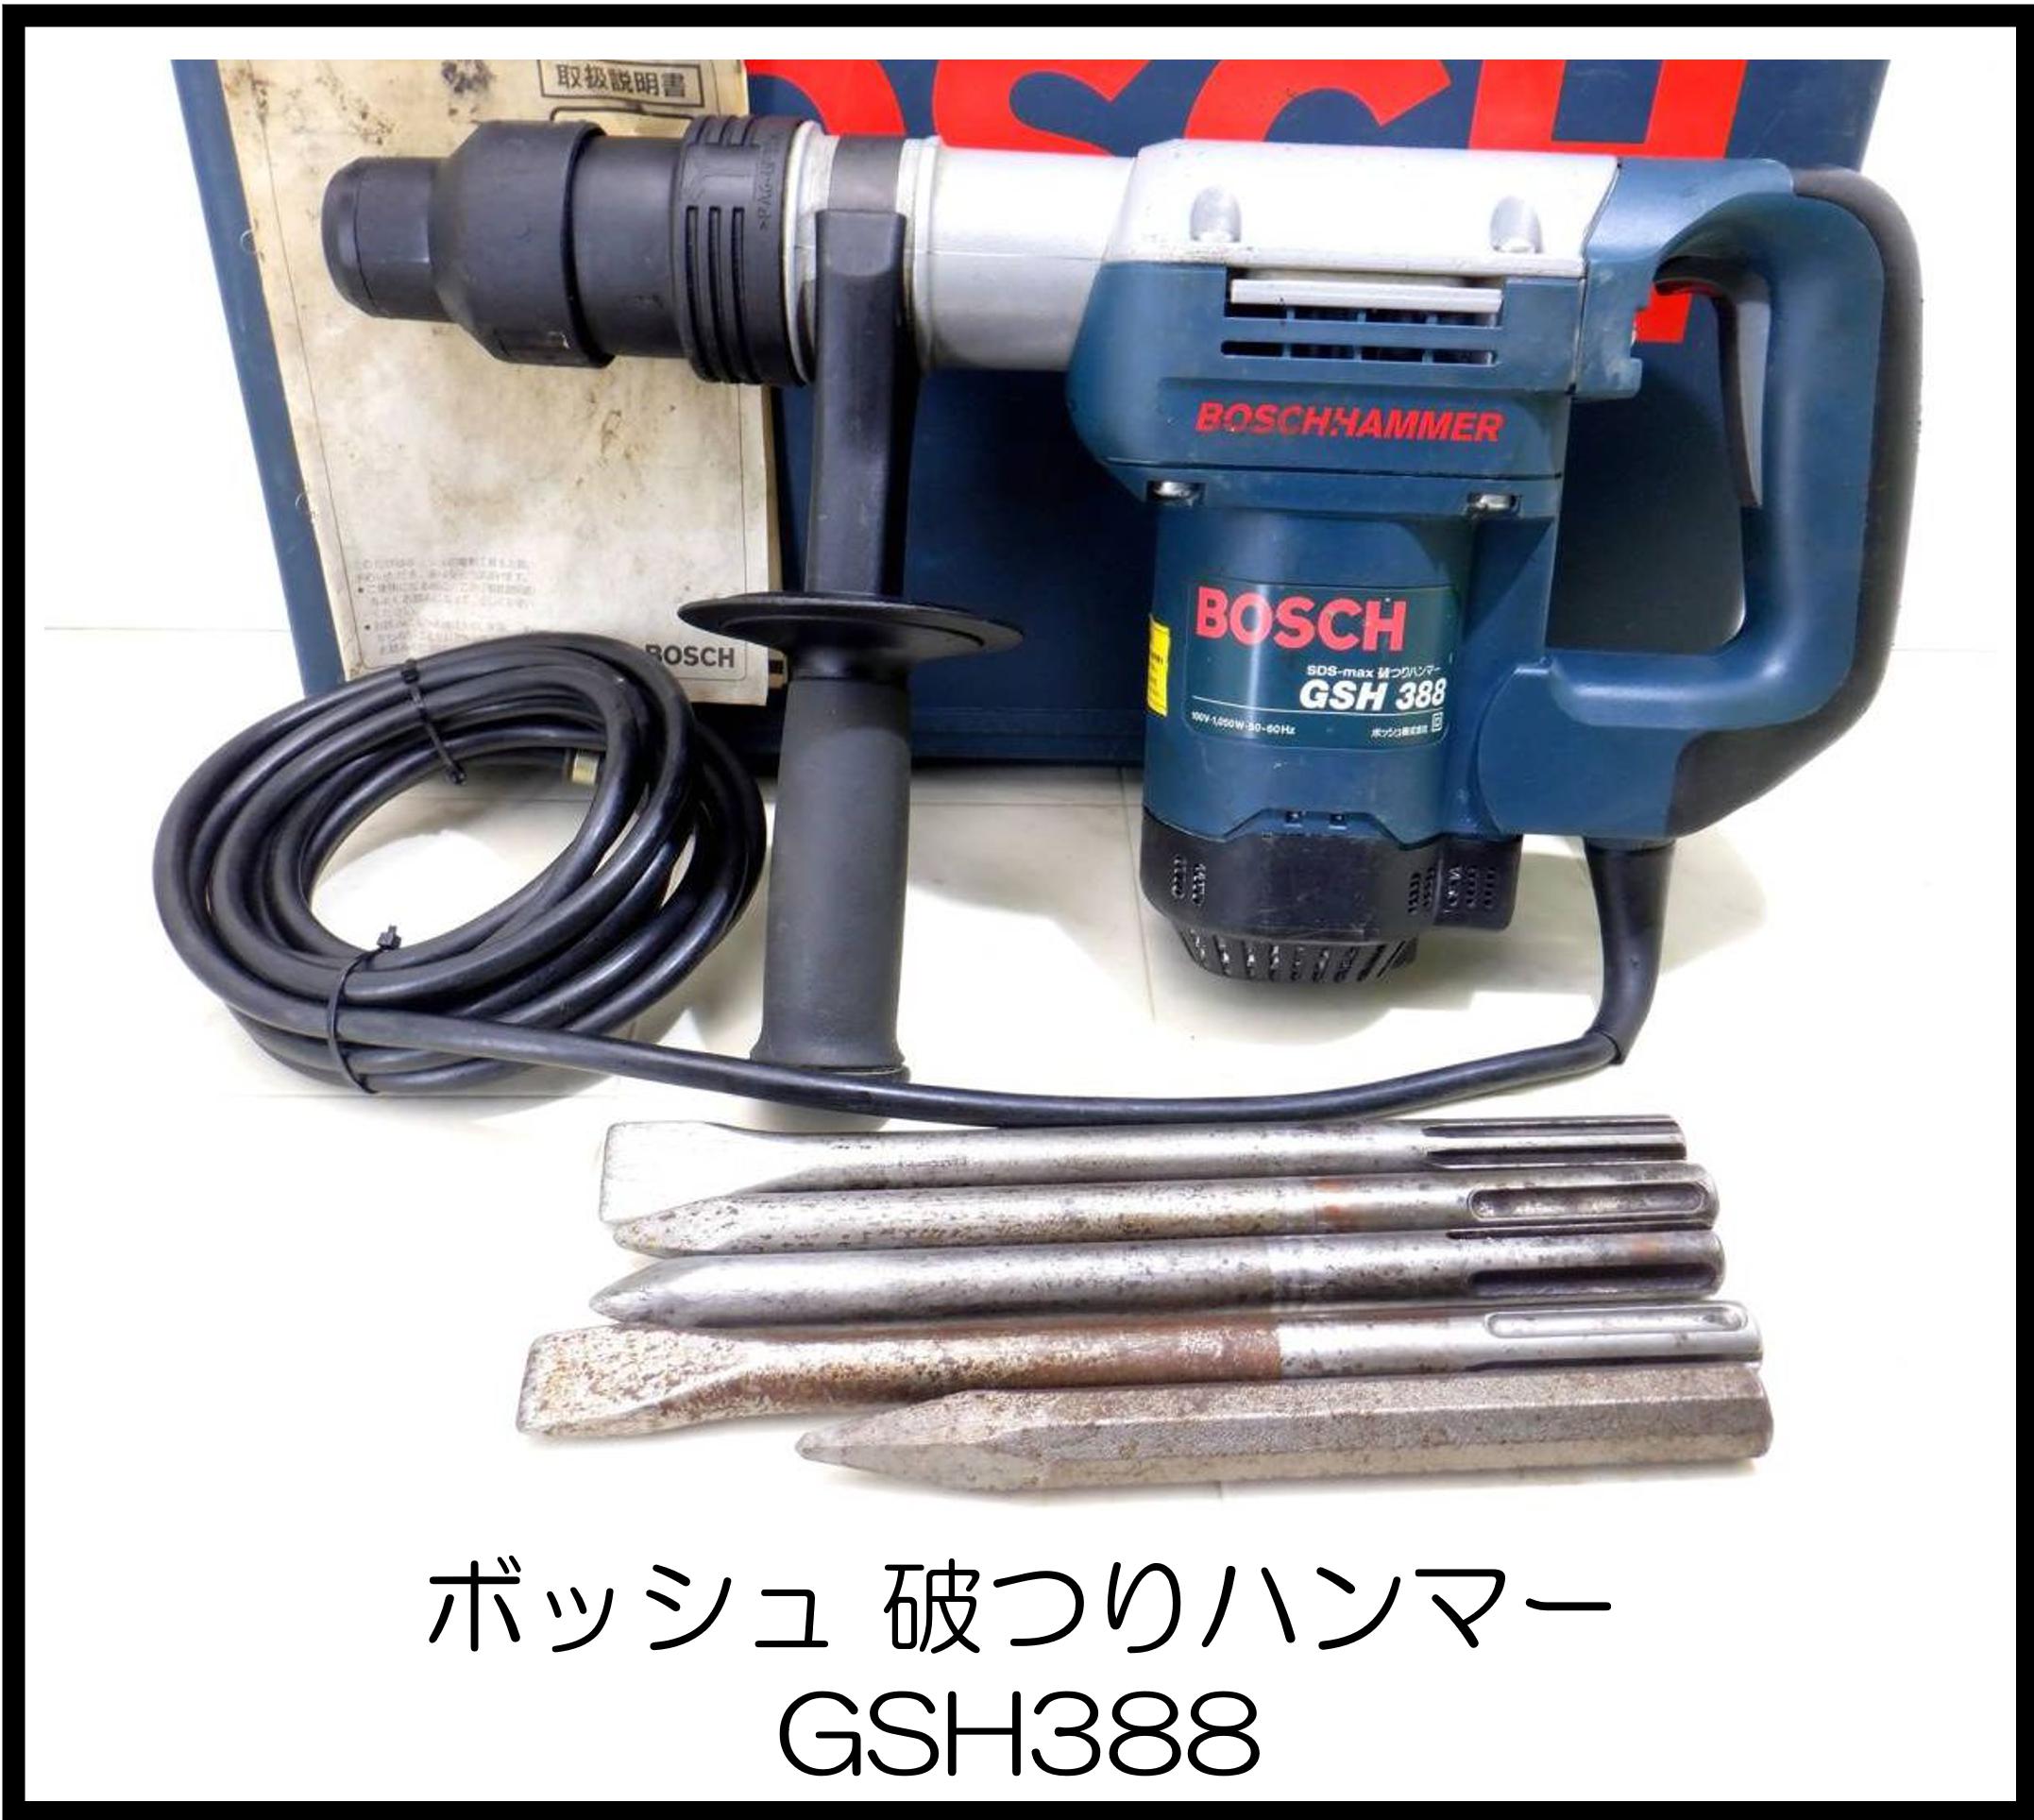 ボッシュ 破つりハンマー GSH388 大阪工具買取エスクライン